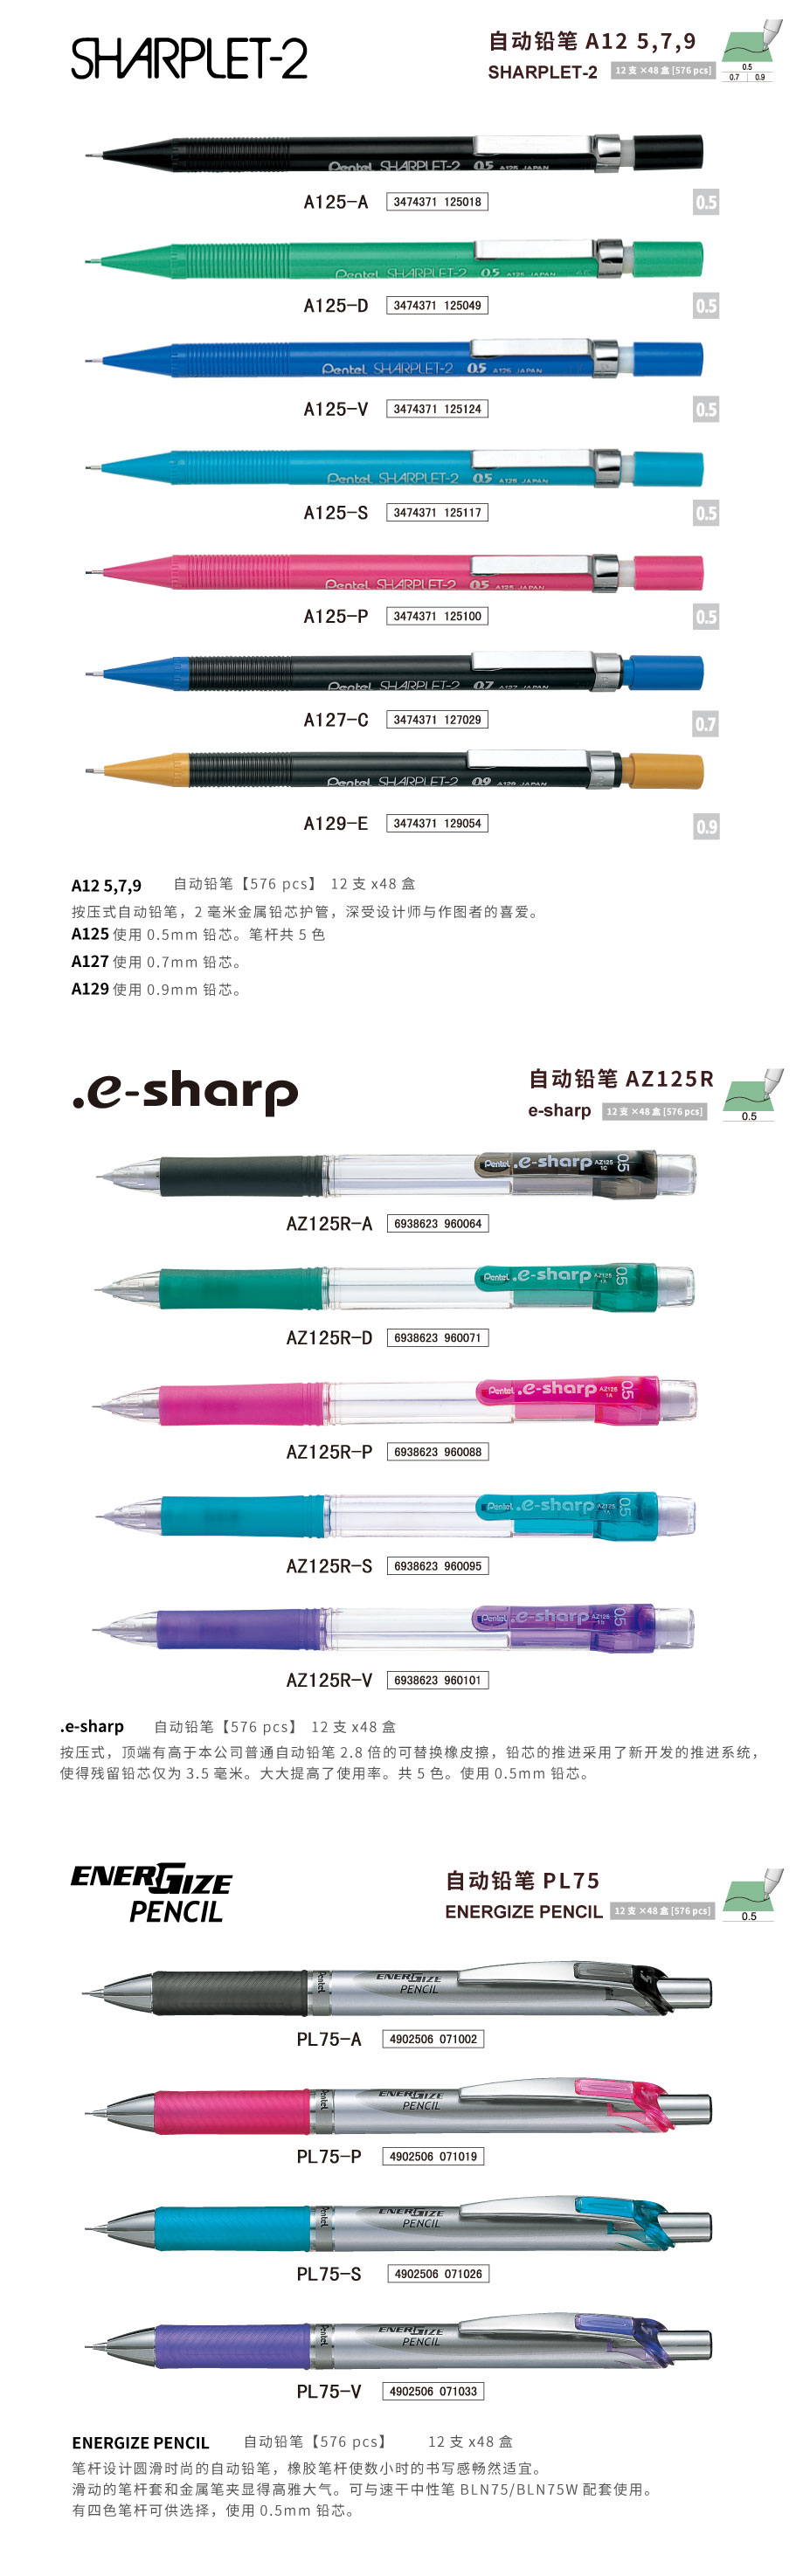 自动铅笔・SHARPLET-2/e-sharp/ENERGIZE PENCIL